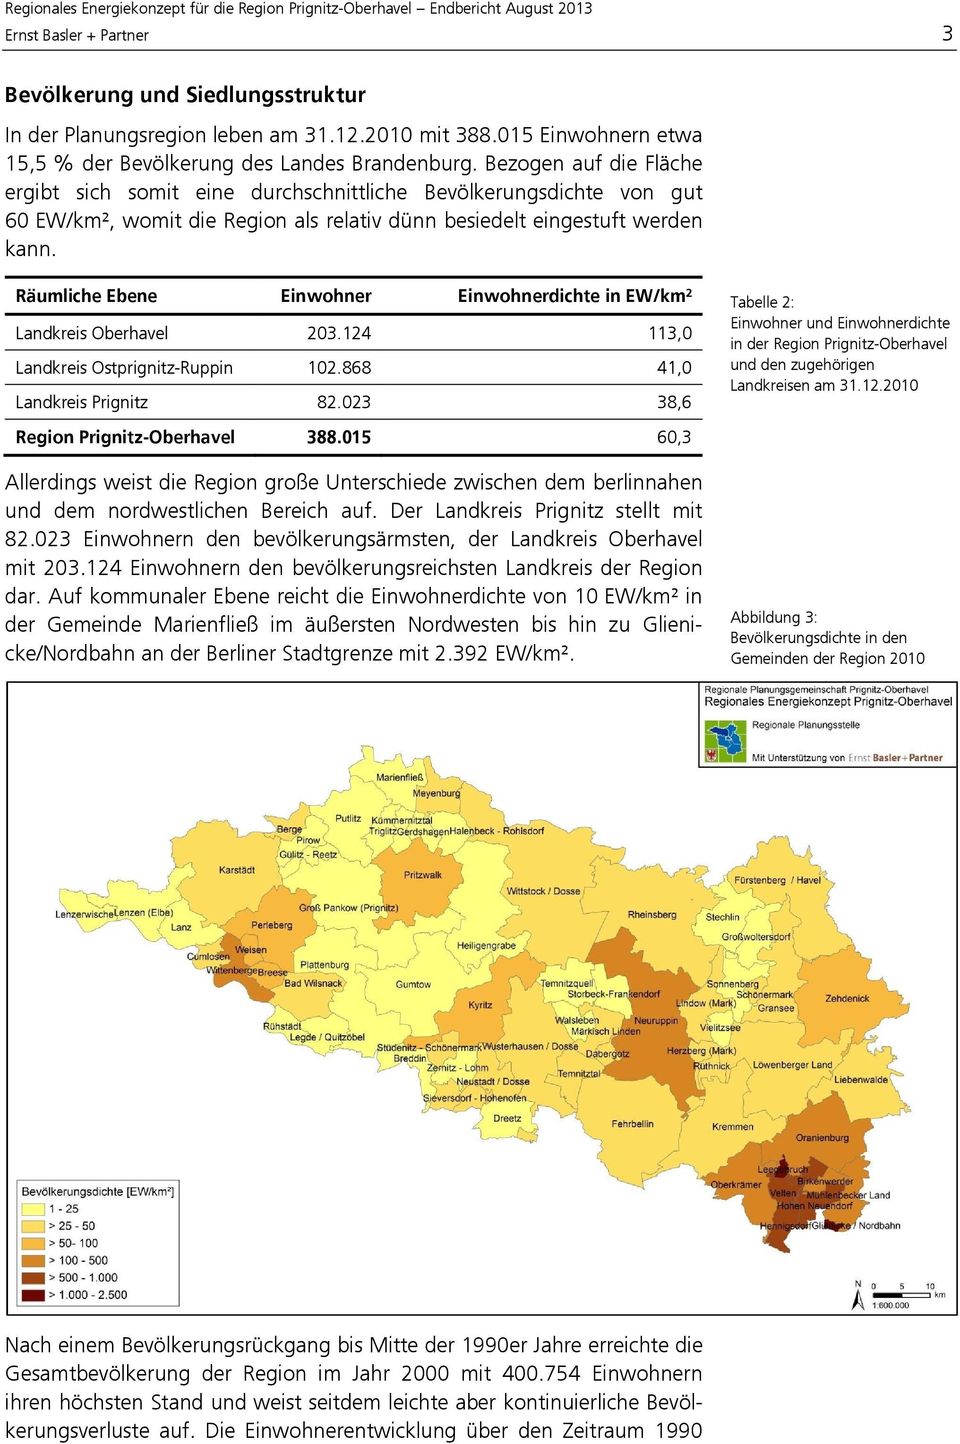 Räumliche Ebene Einwohner Einwohnerdichte in EW/km² Landkreis Oberhavel 203.124 113,0 Landkreis Ostprignitz-Ruppin 102.868 41,0 Landkreis Prignitz 82.